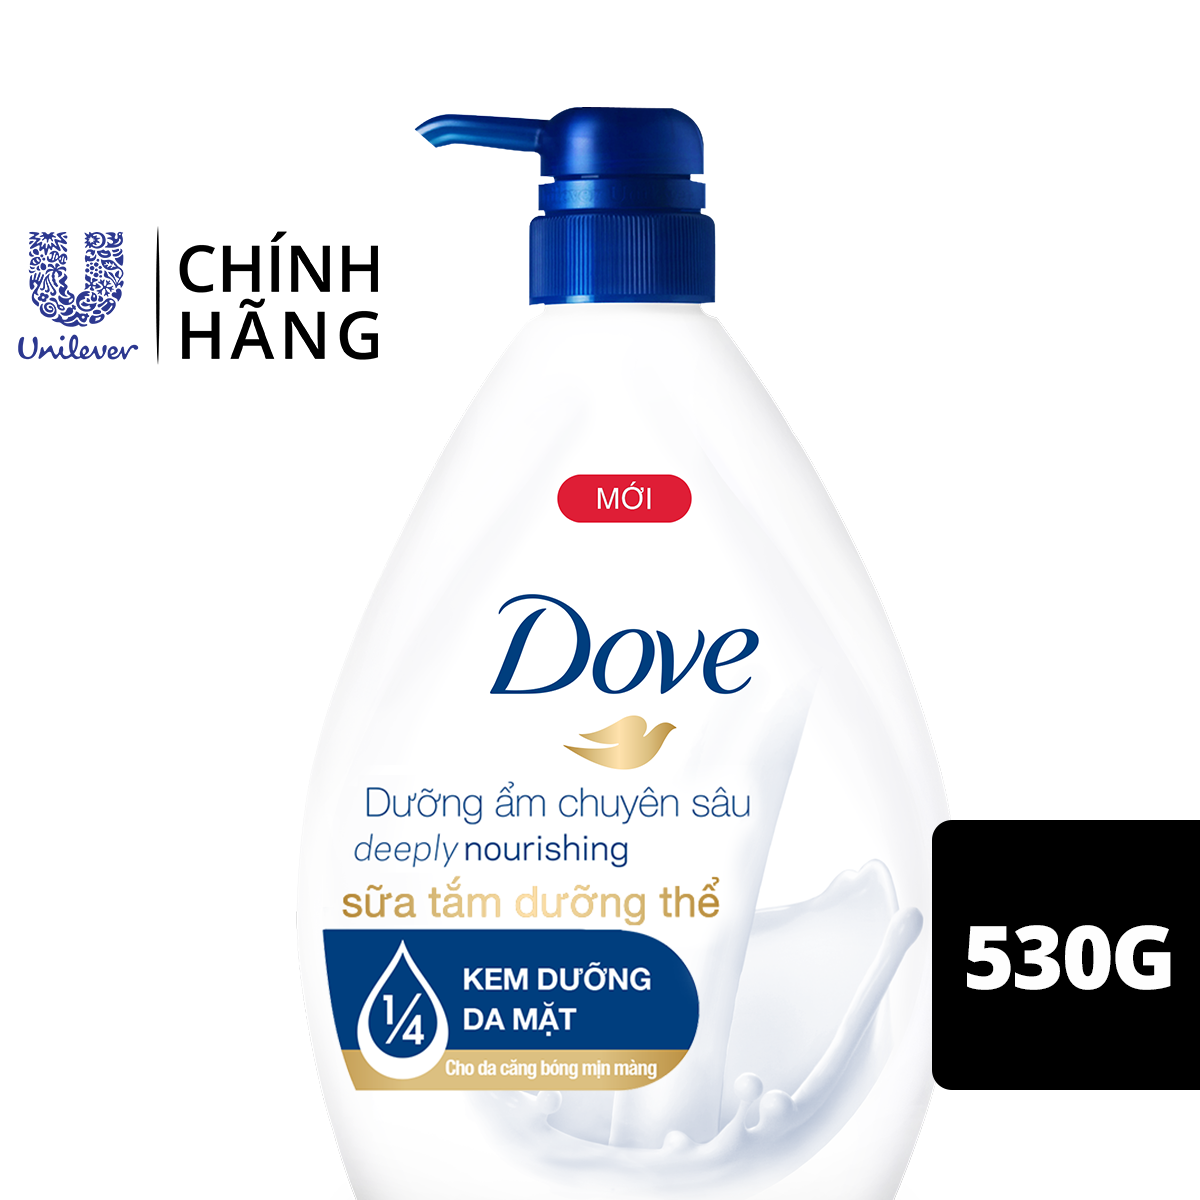 Sữa Tắm Dưỡng Thể 530G Dove Dưỡng Ẩm Chuyên Sâu Deeply Nourishing Với 1/4 Kem Dưỡng Da Mặt